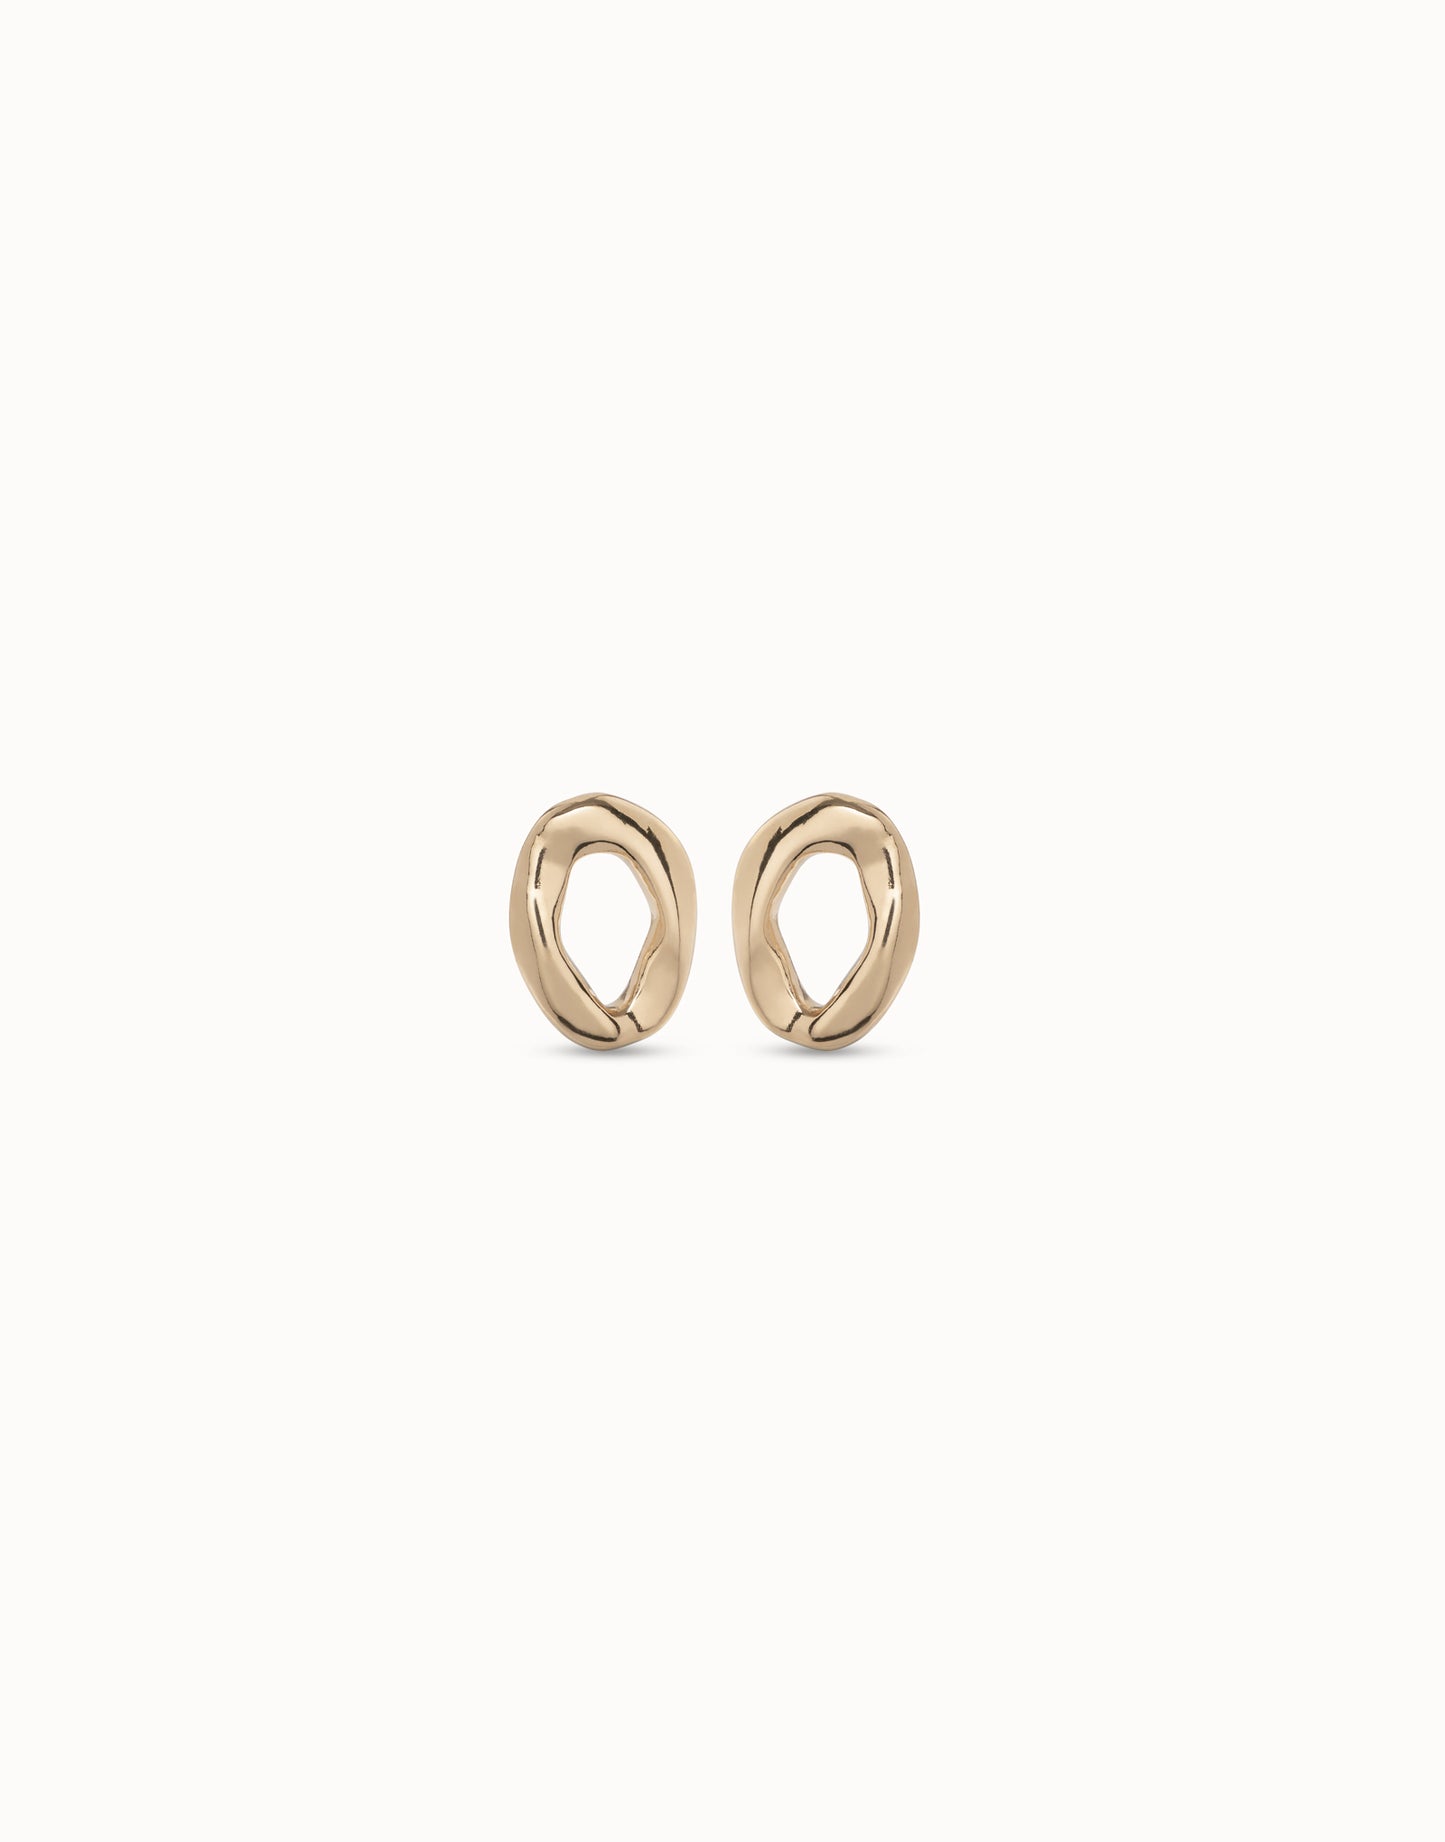 Joy of living Earrings | Uno de 50 | Luby 